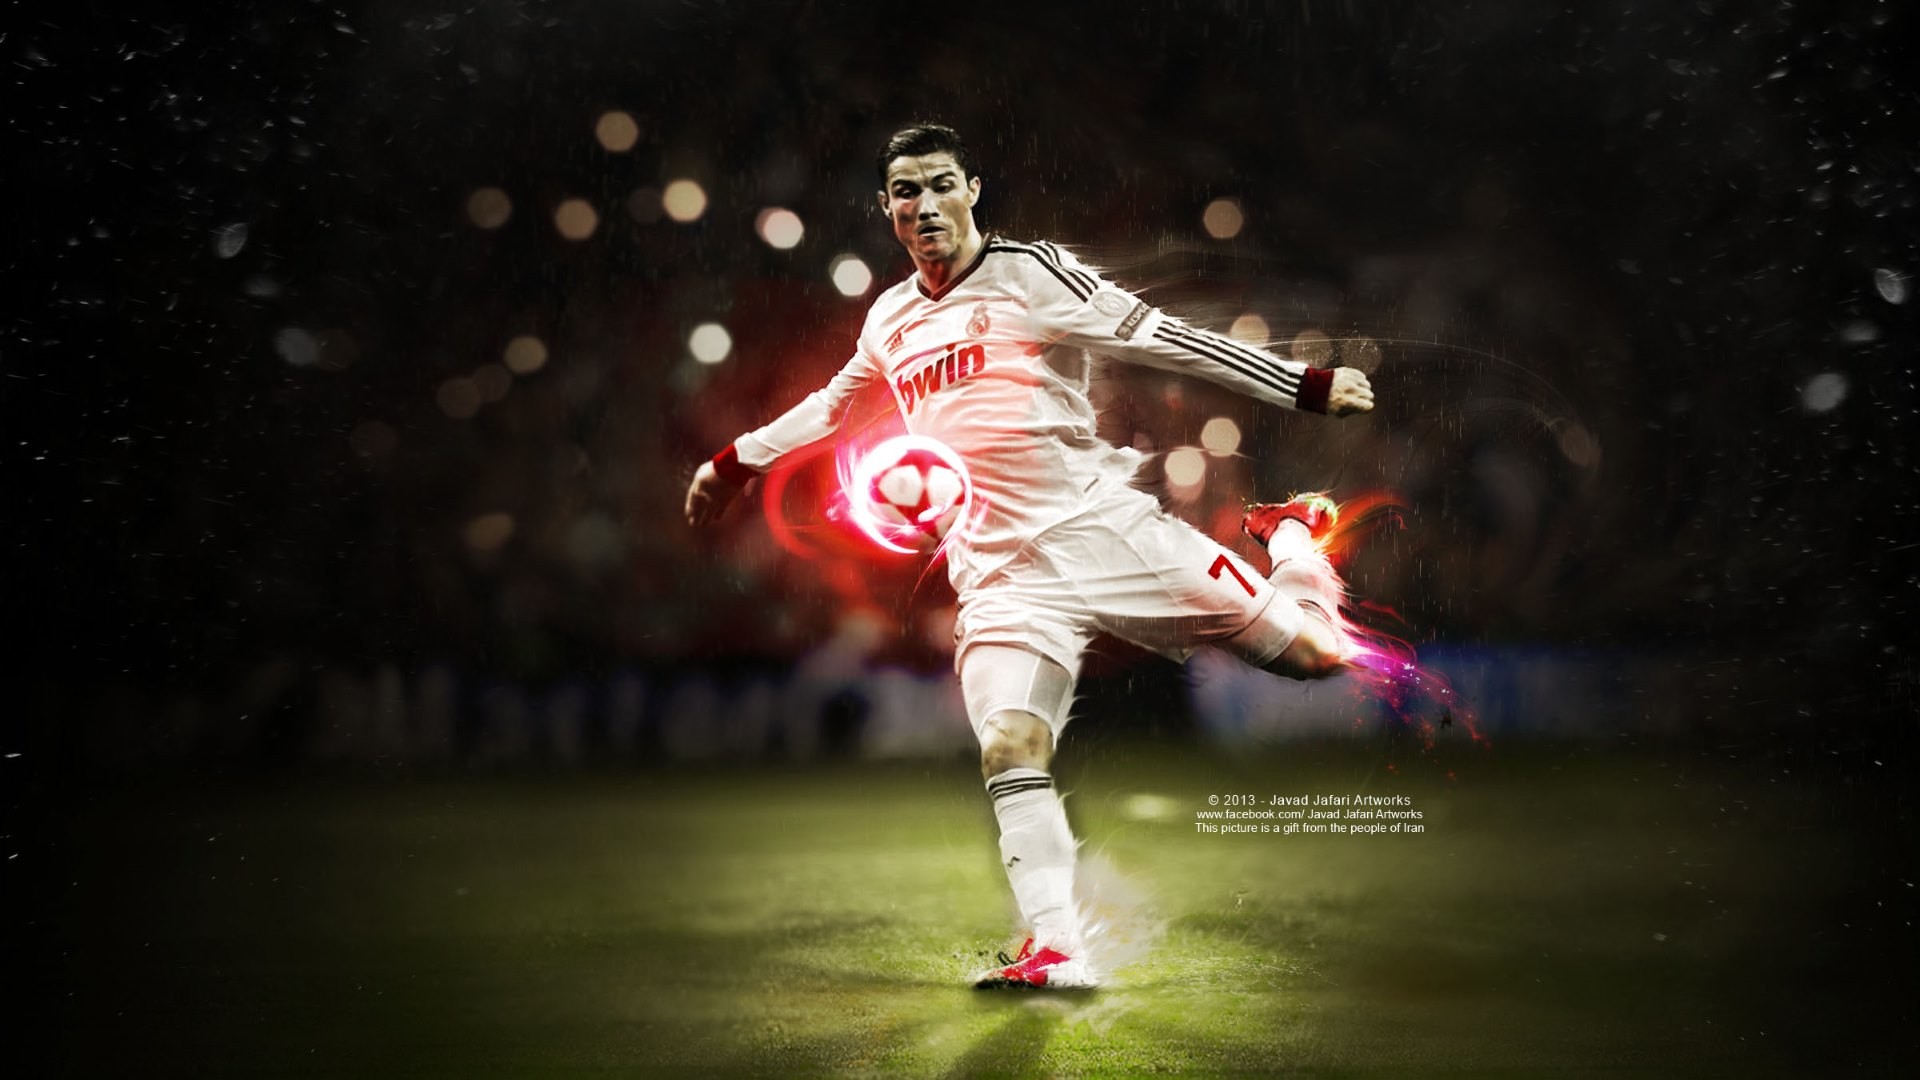 Cristiano Ronaldo Wallpaper 1080p Image